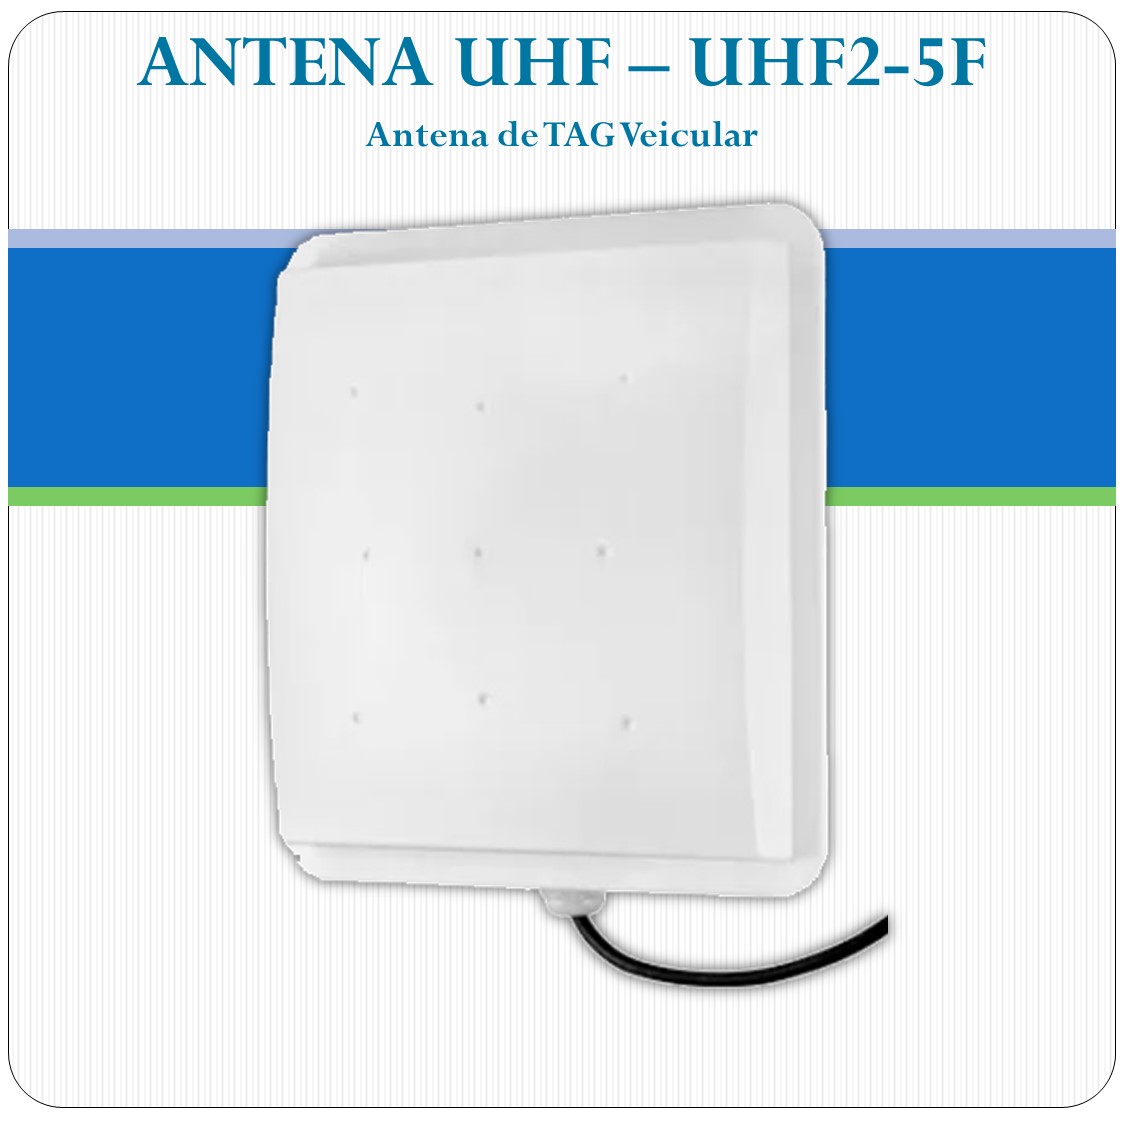 Antena UHF de Tag Veicular - UHF2-5F